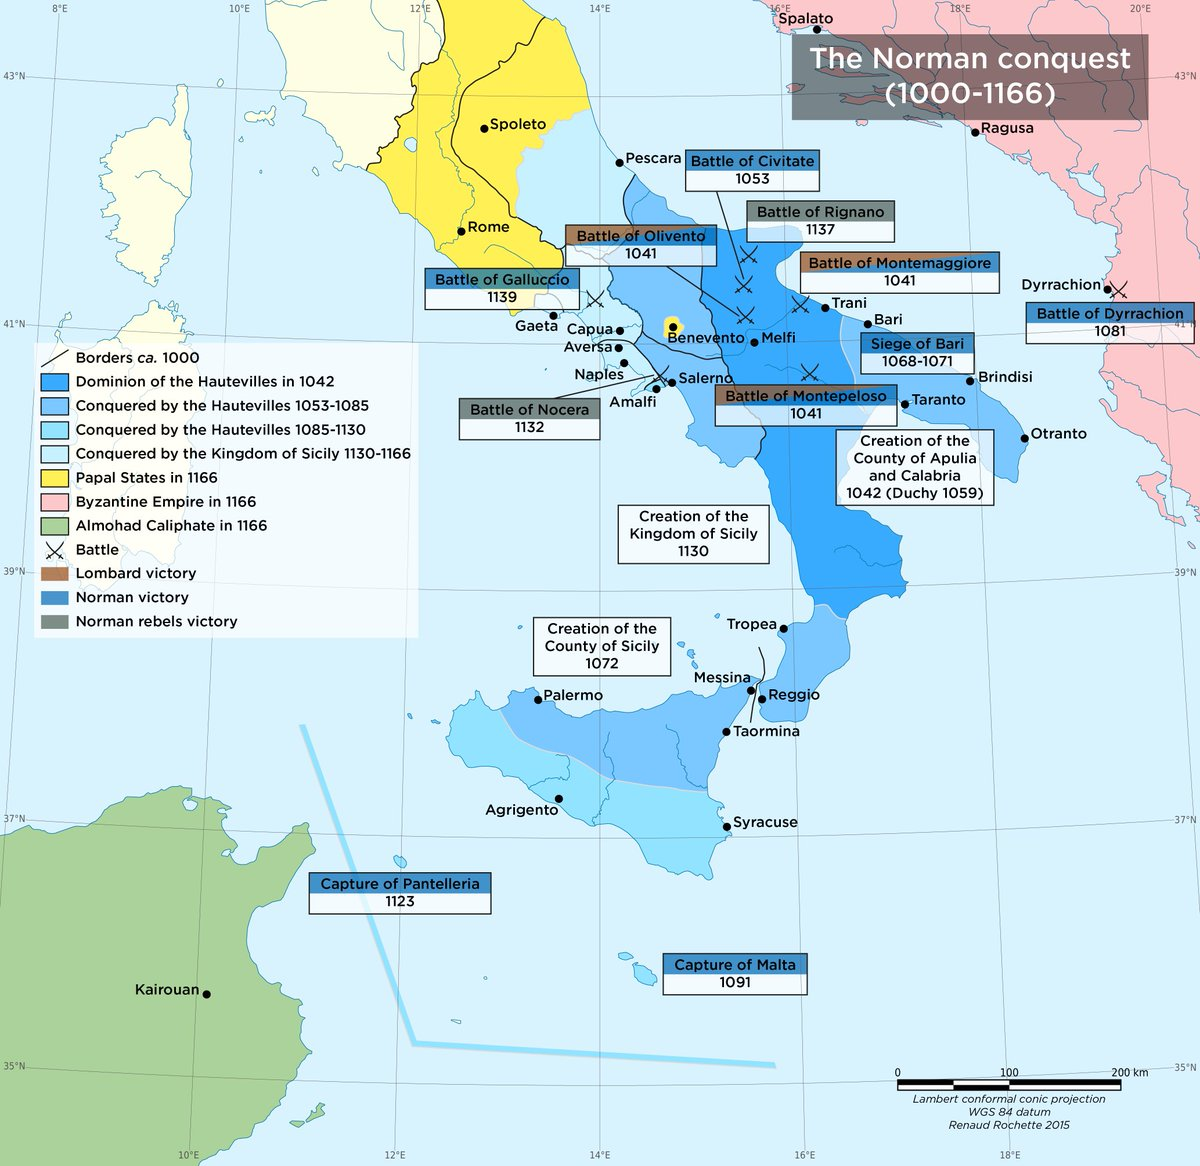 1000年-1166年西西里王國的擴張與發展